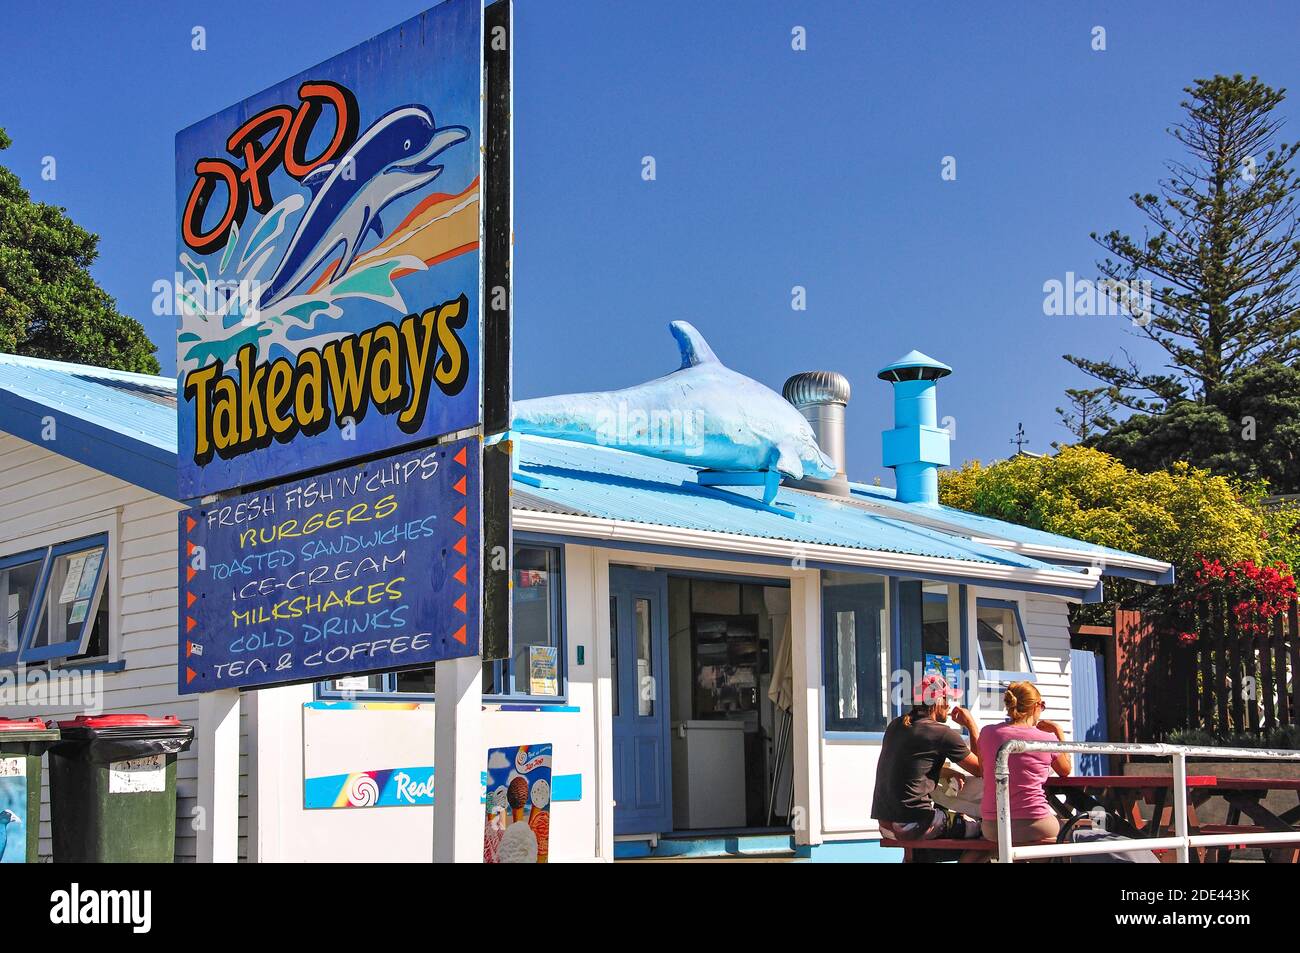 Opo takeaway shop on foreshore, Opononi, regione di Northland, Isola del nord, Nuova Zelanda Foto Stock